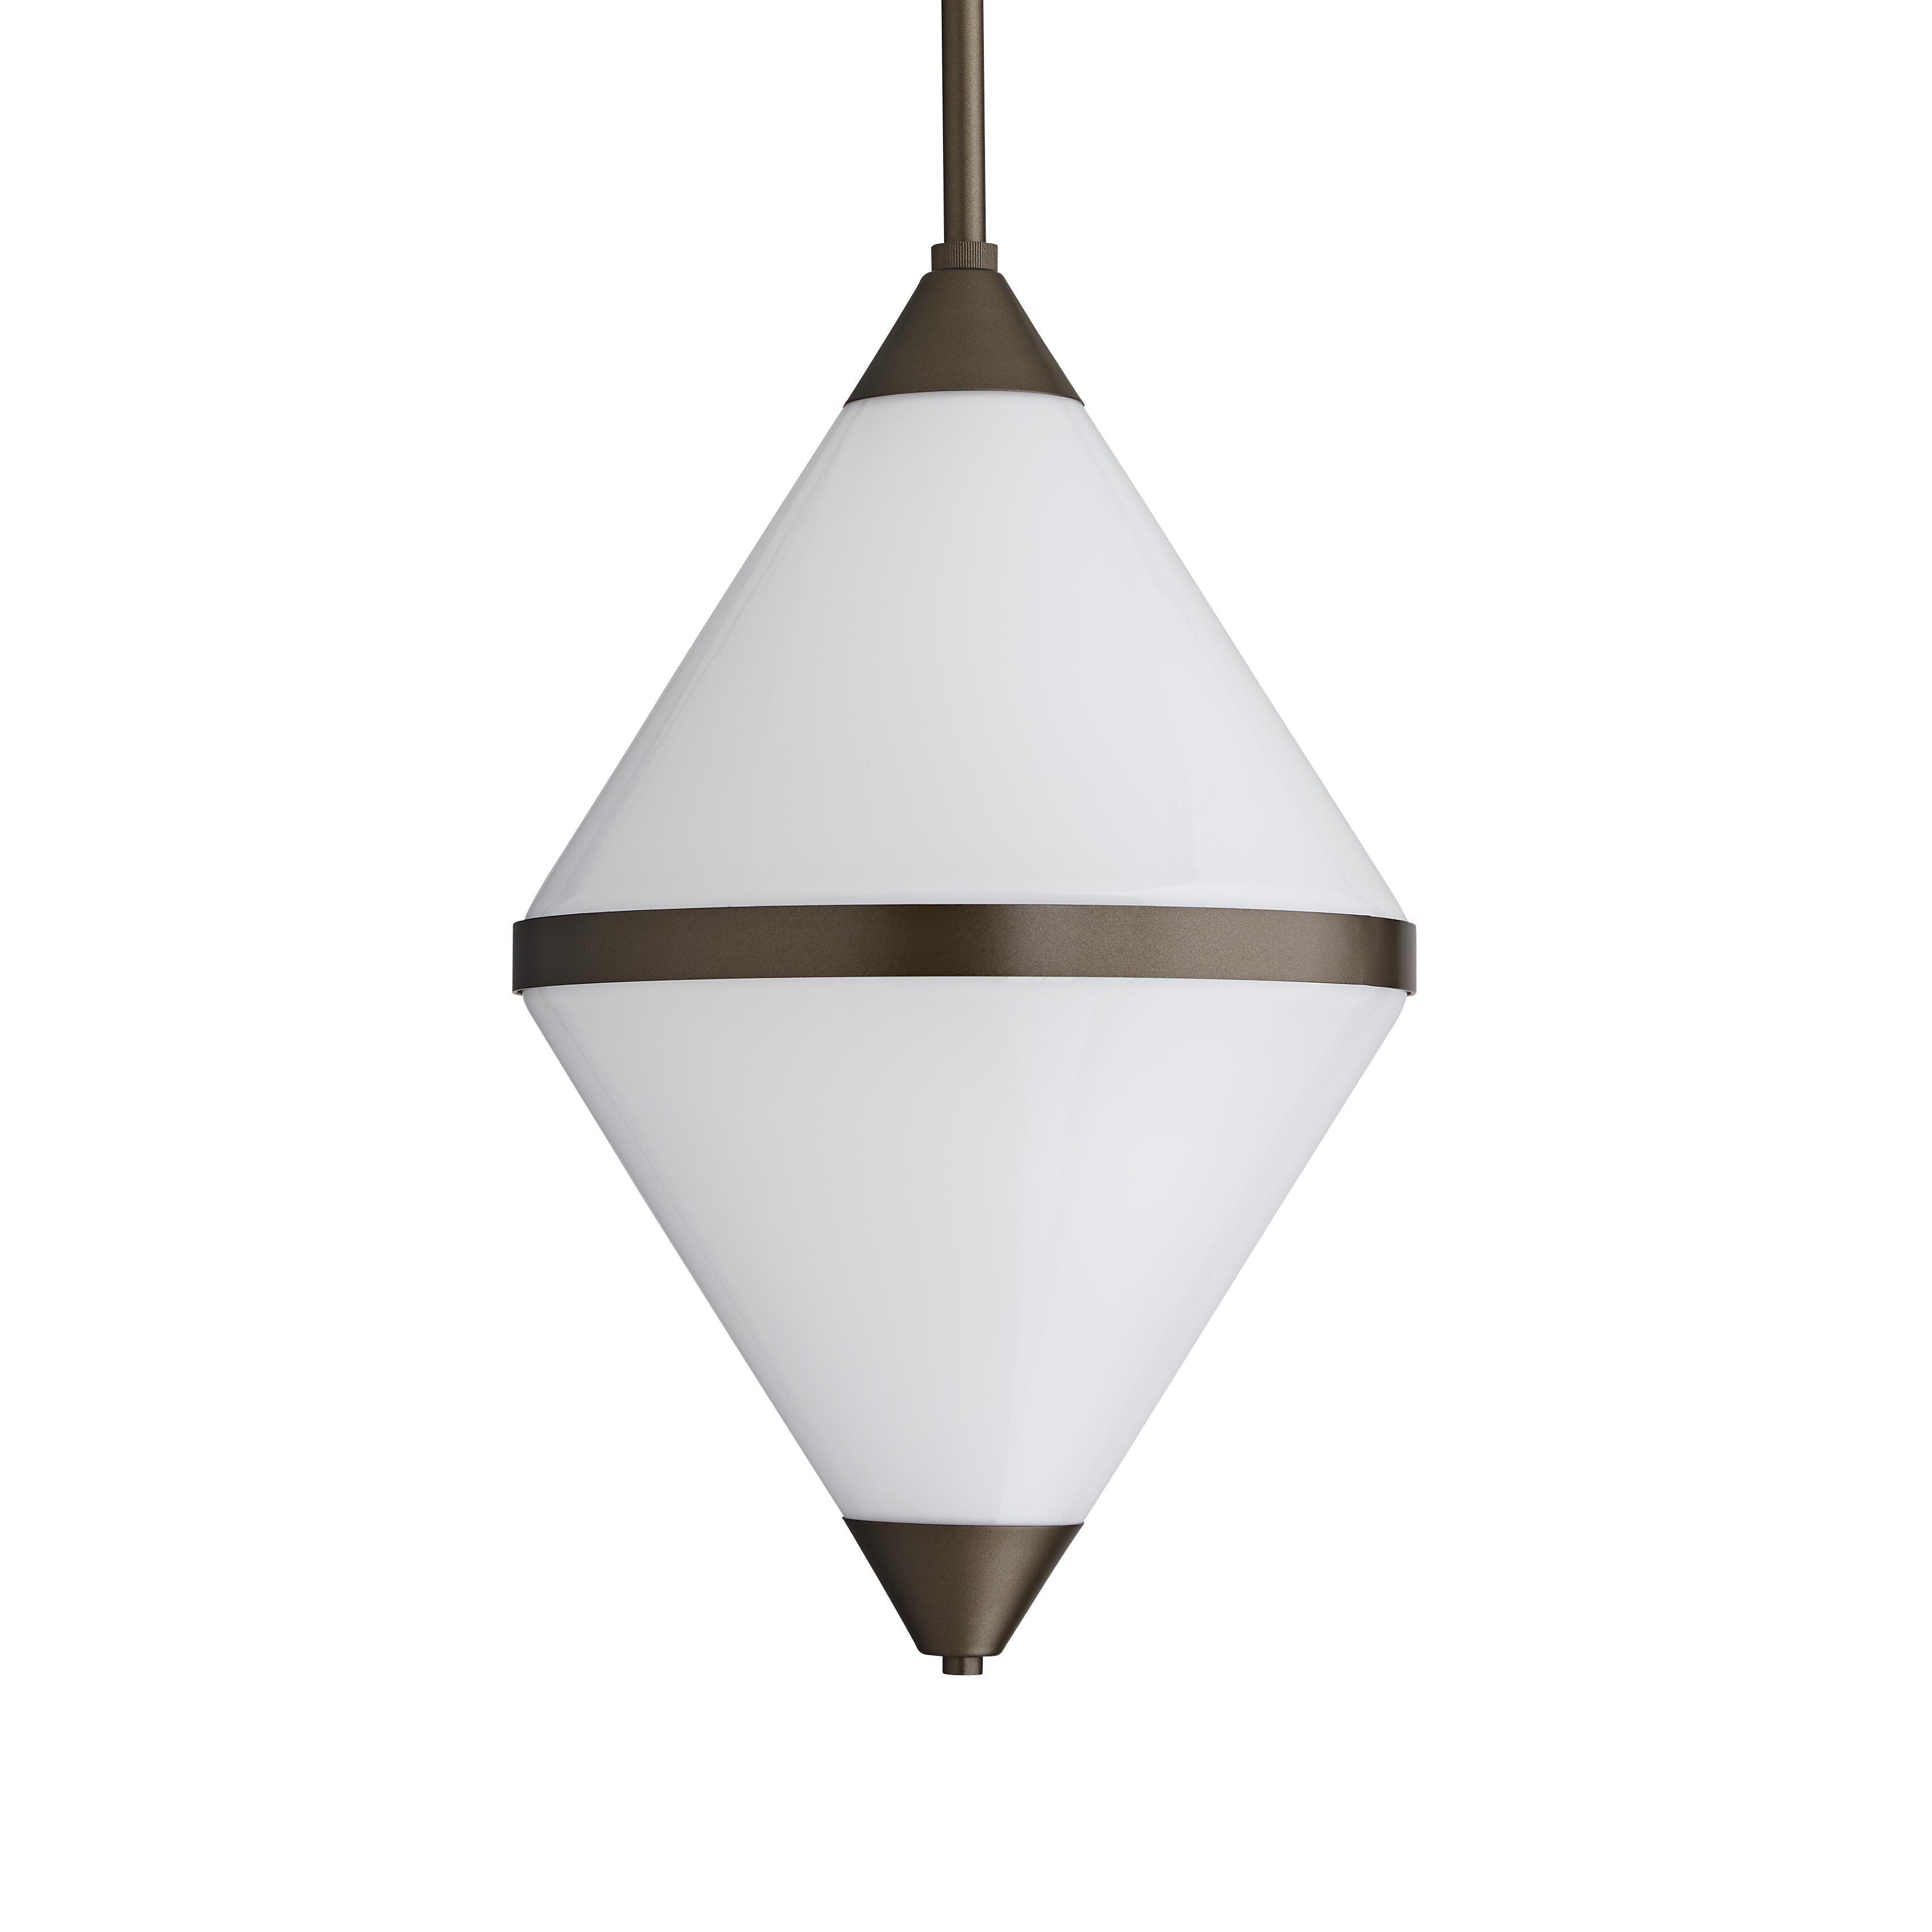 Купить Подвесной светильник для улицы Tinker Outdoor Pendant в интернет-магазине roooms.ru